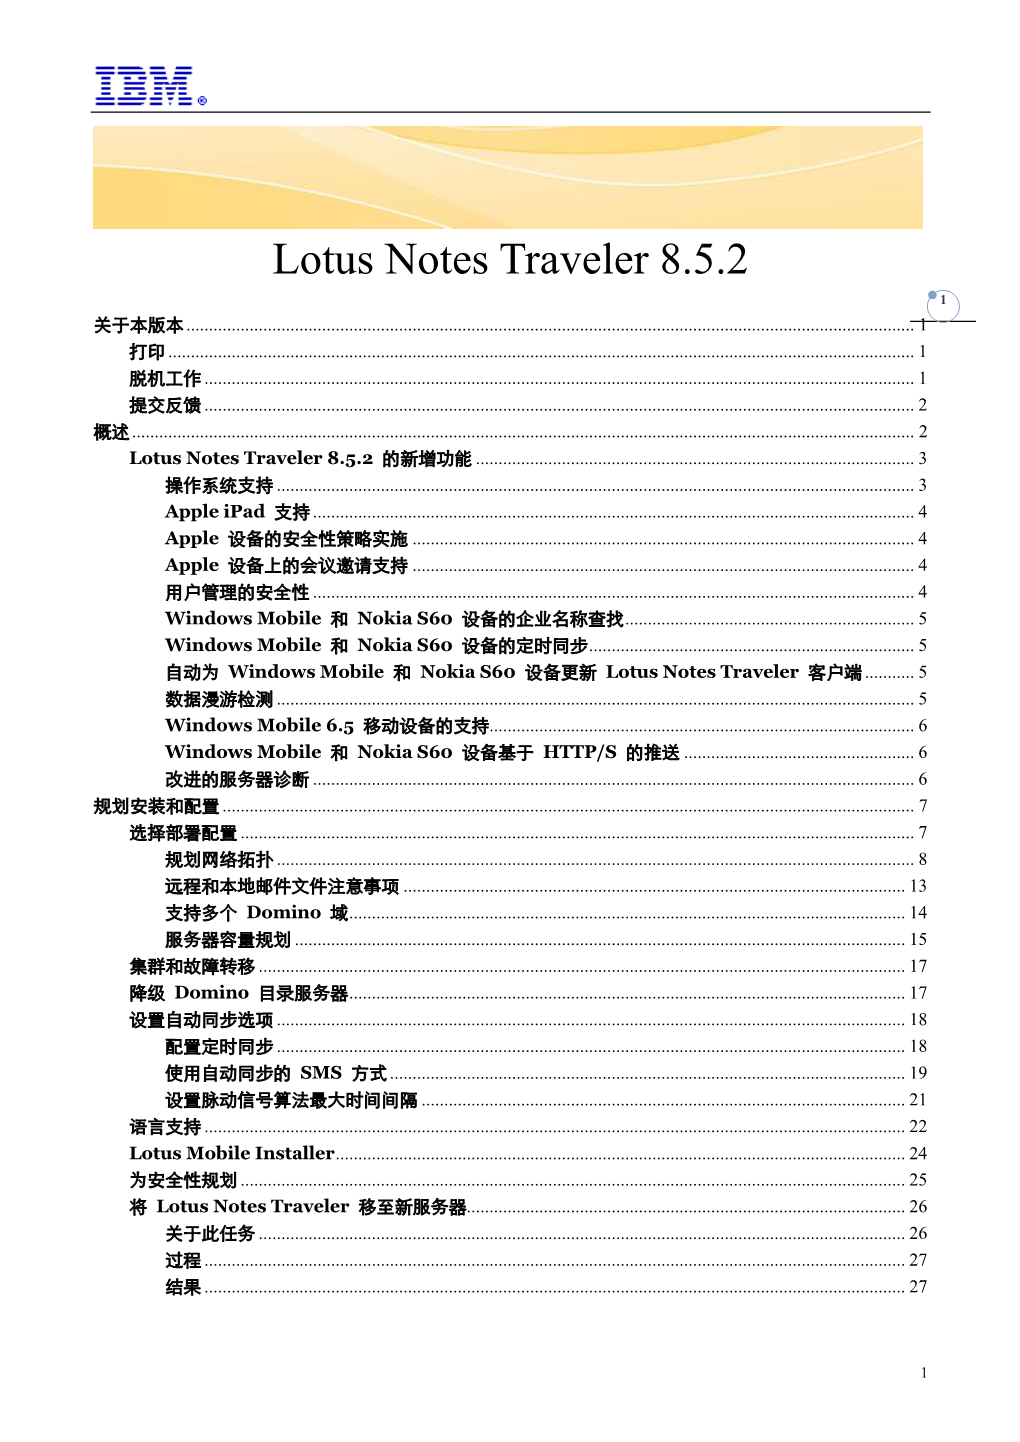 Lotus Notes Traveler 8.5.2 1 关于本版本